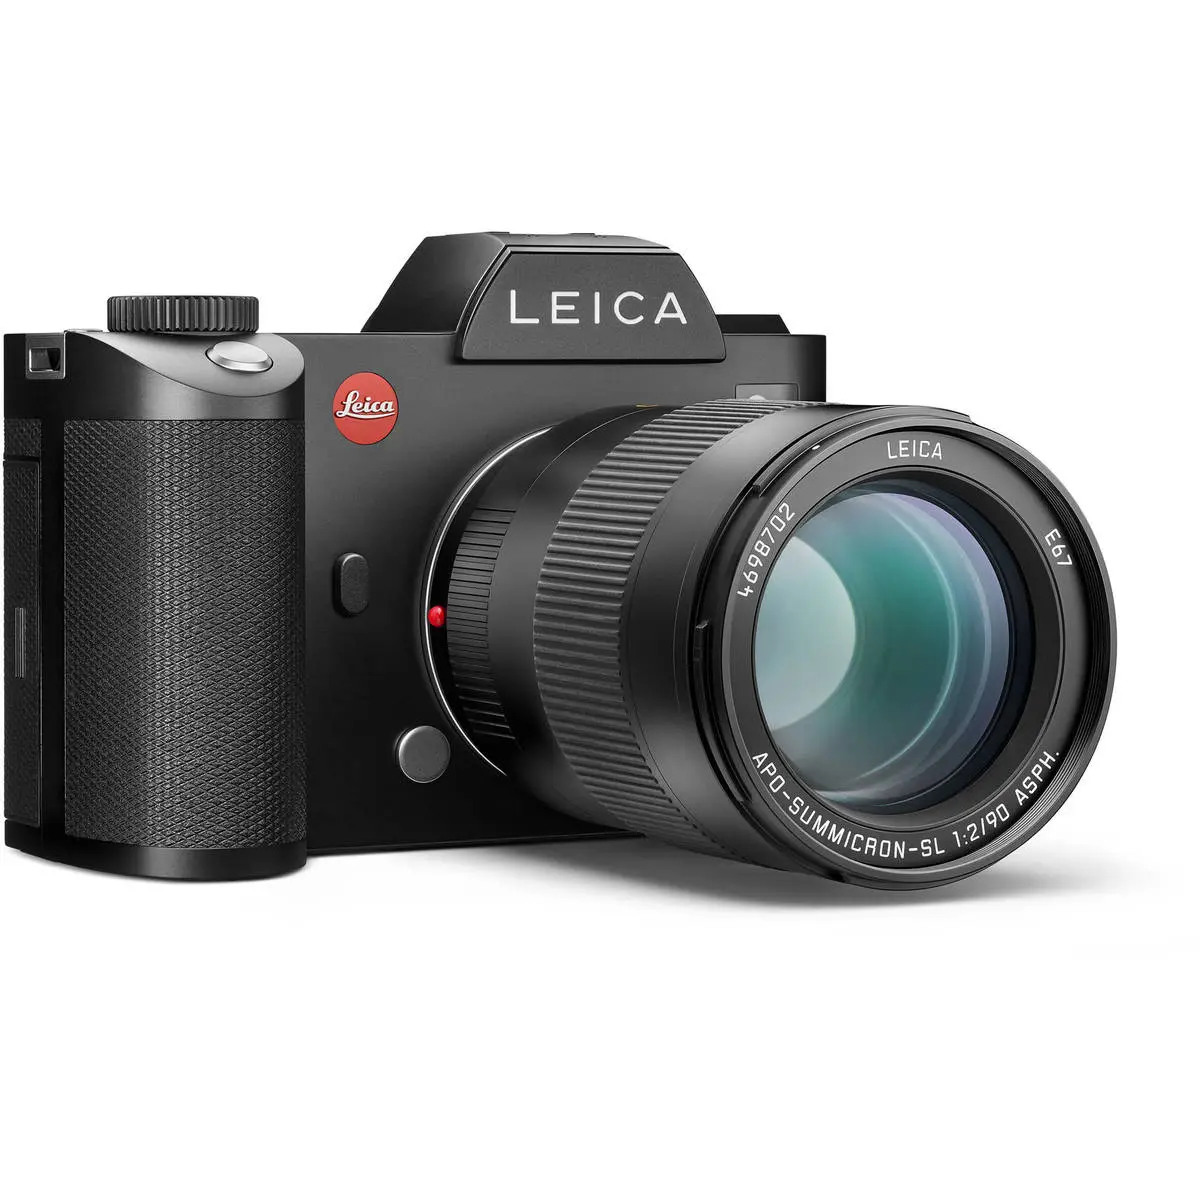 6. Leica APO-Summicron-SL 90mm f/2 ASPH (11179) Lens